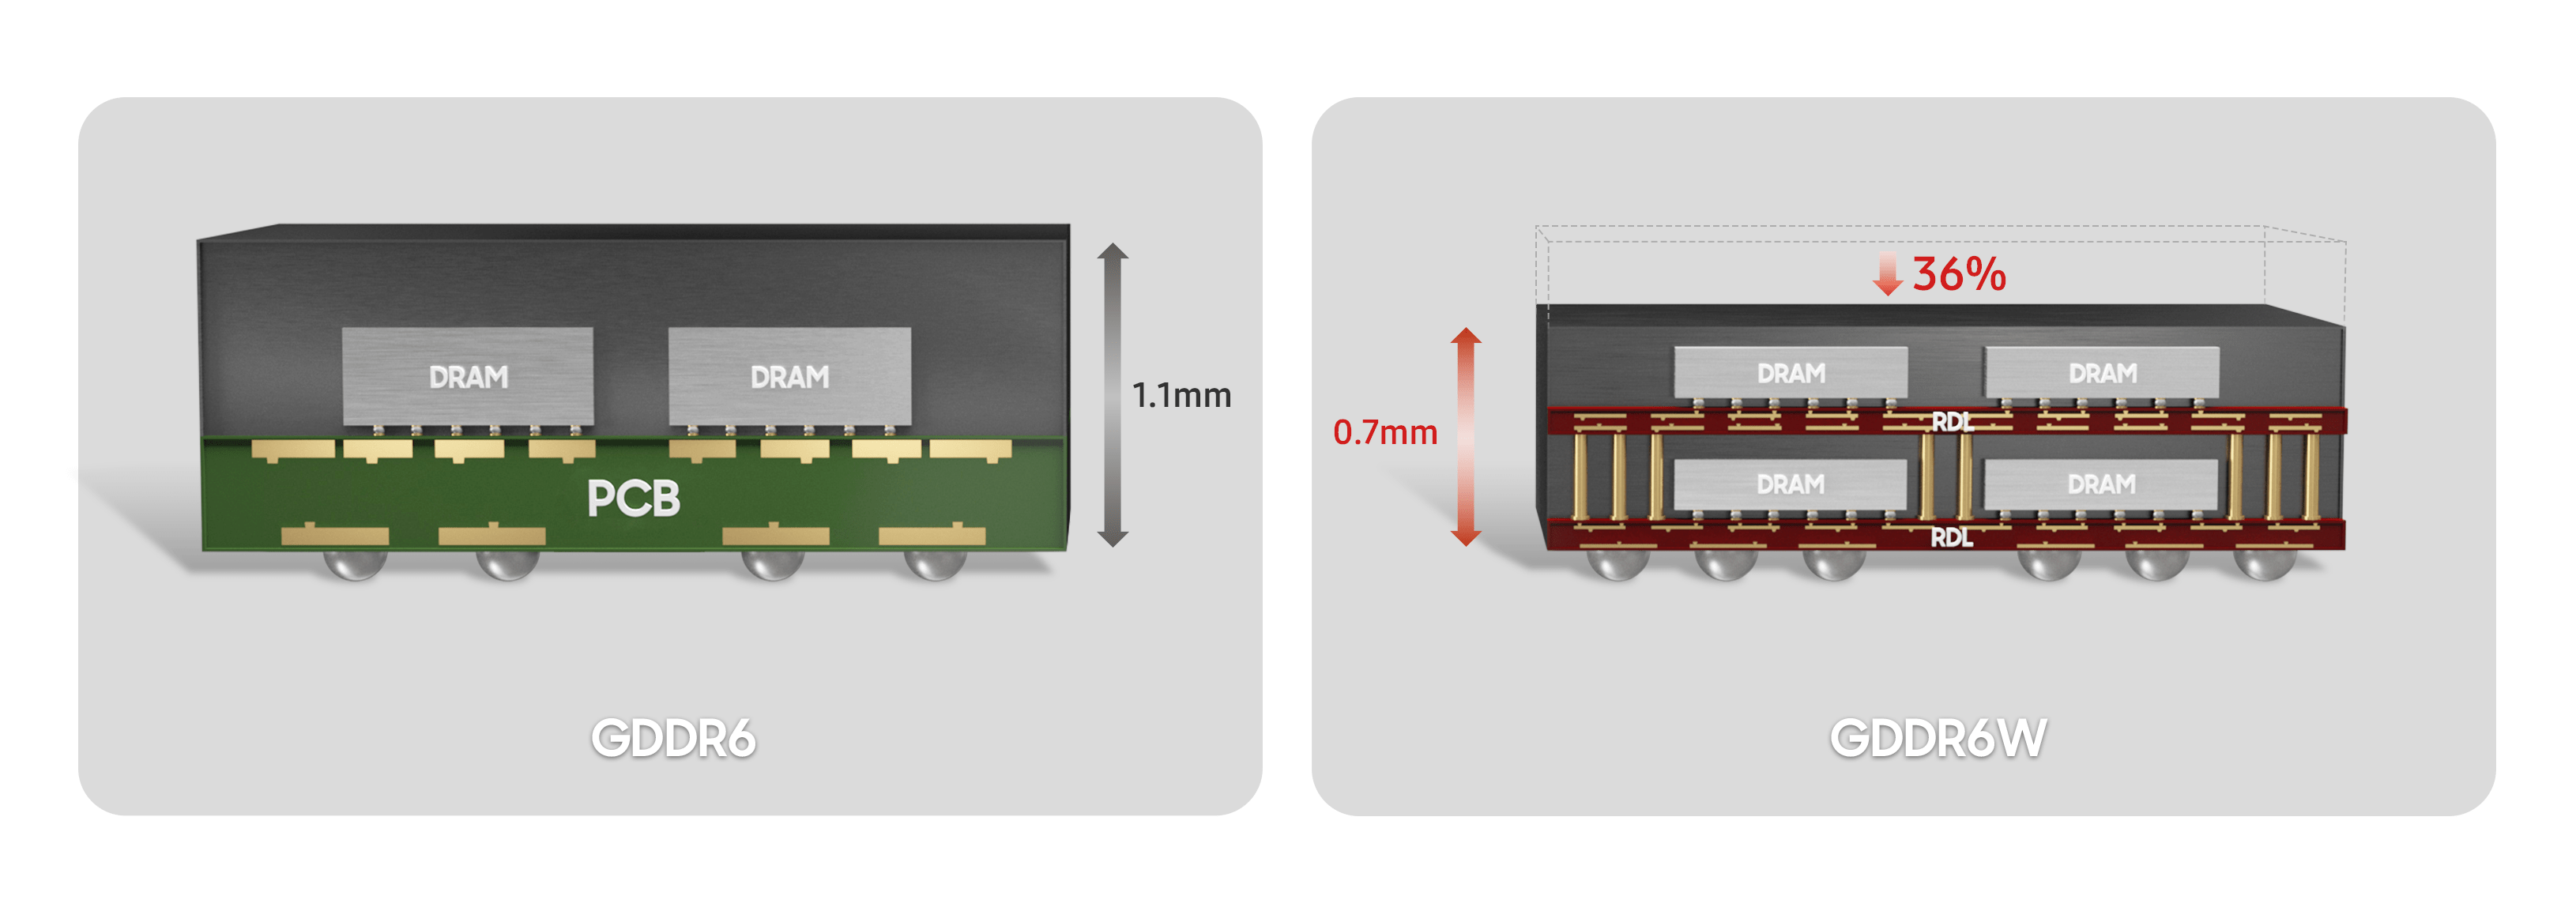 삼성 GDDR6와 GDDR6W의 패키지 비교